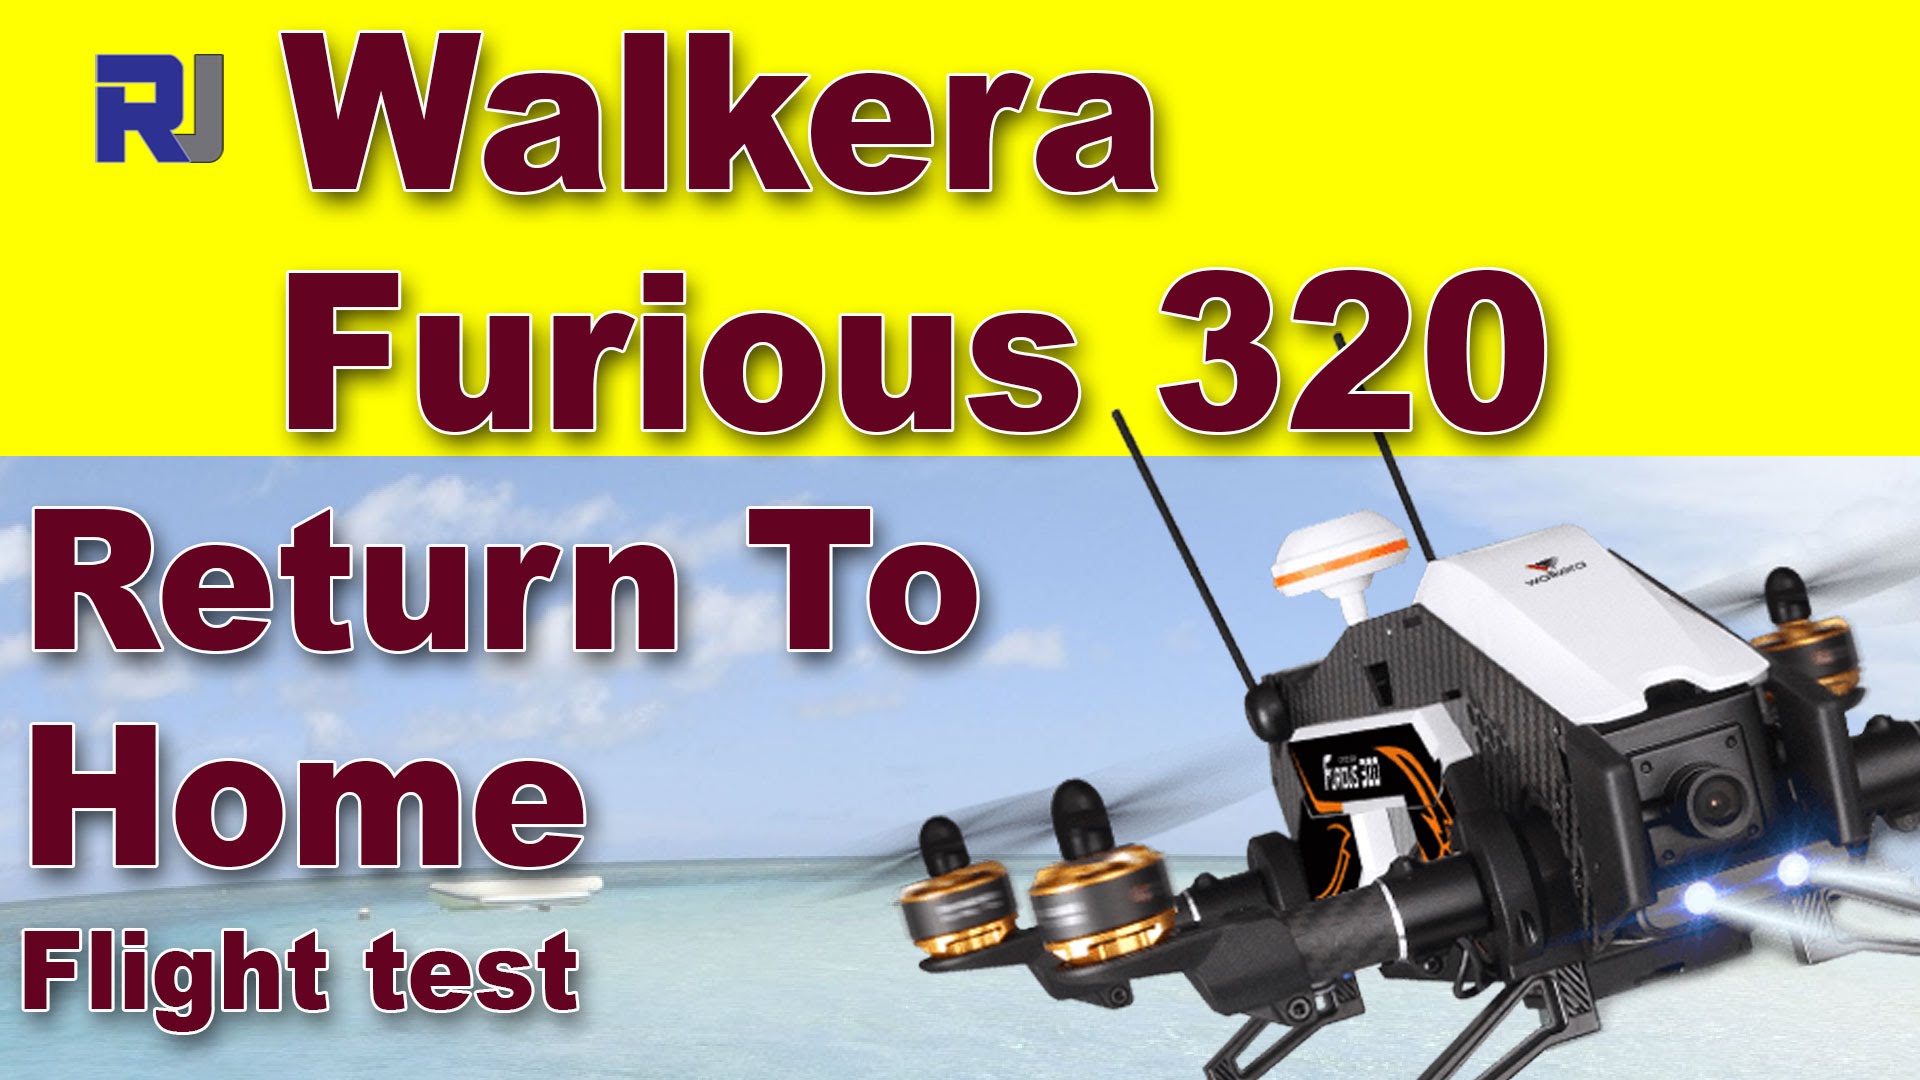 Walkera Furious 320 Quadcopter Return to Home Flight test